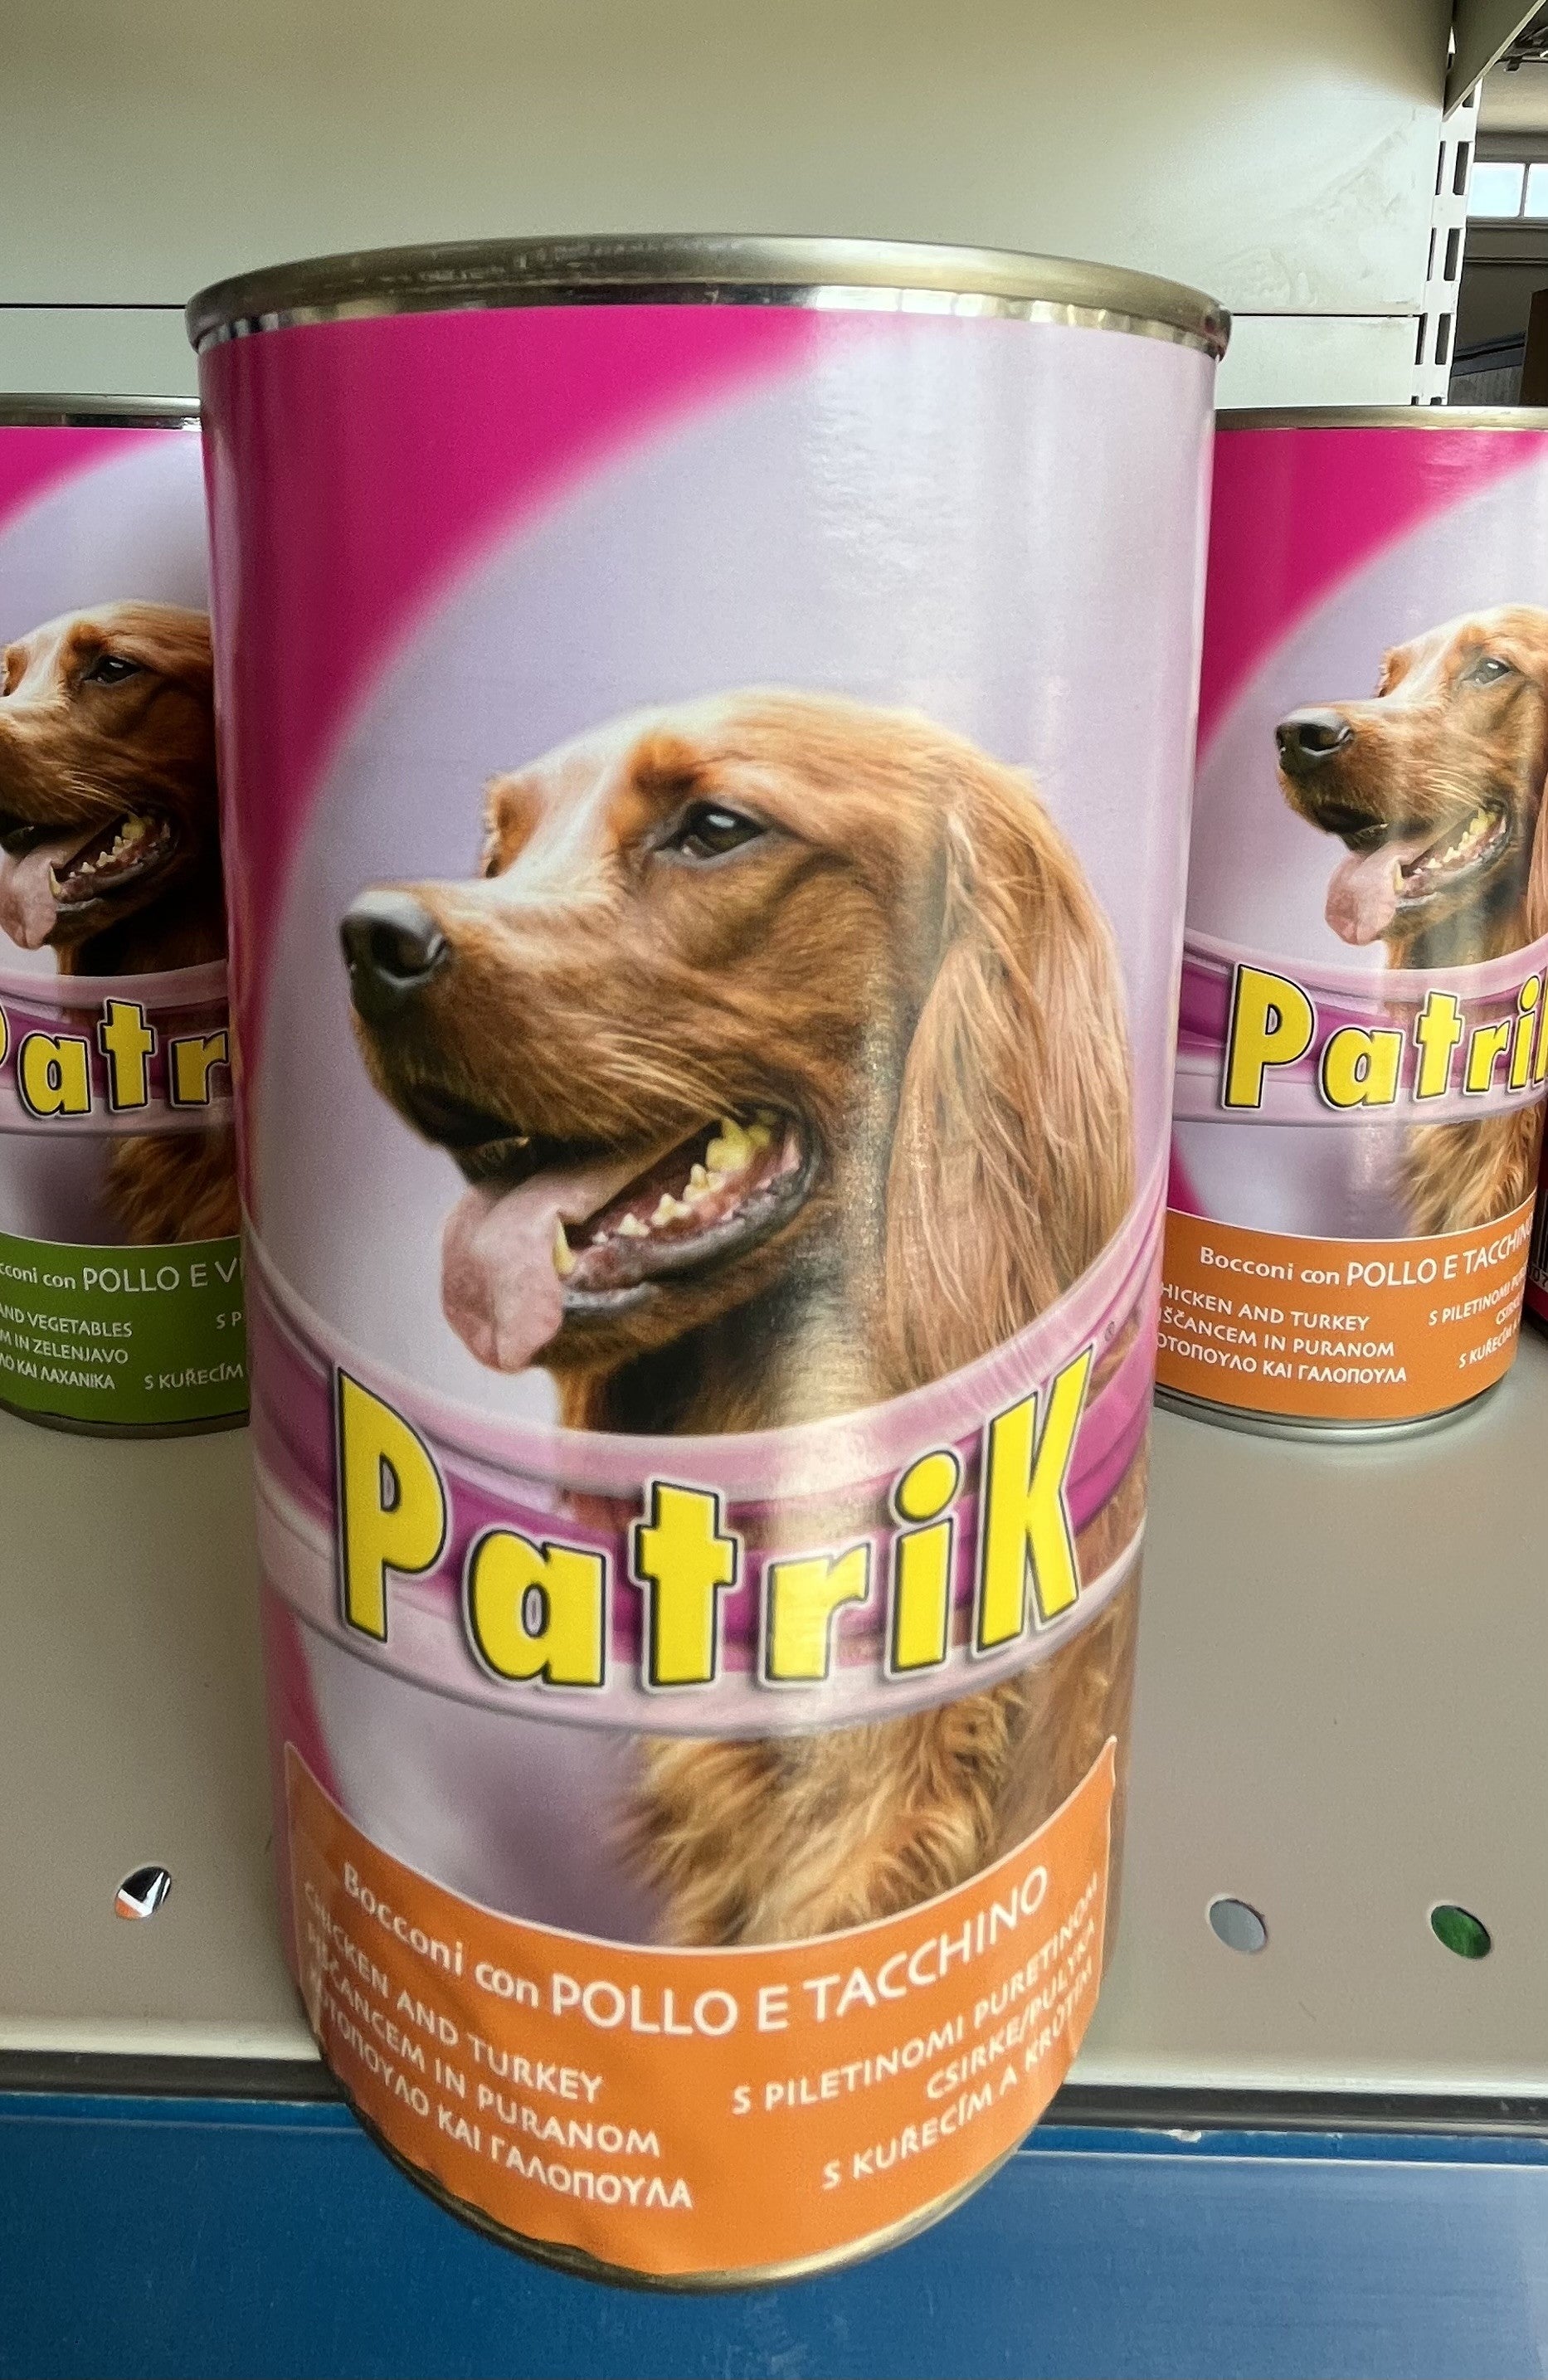 Pets - Patrik - Bocconcini - Pollo - Tacchino - 1,250 Kg